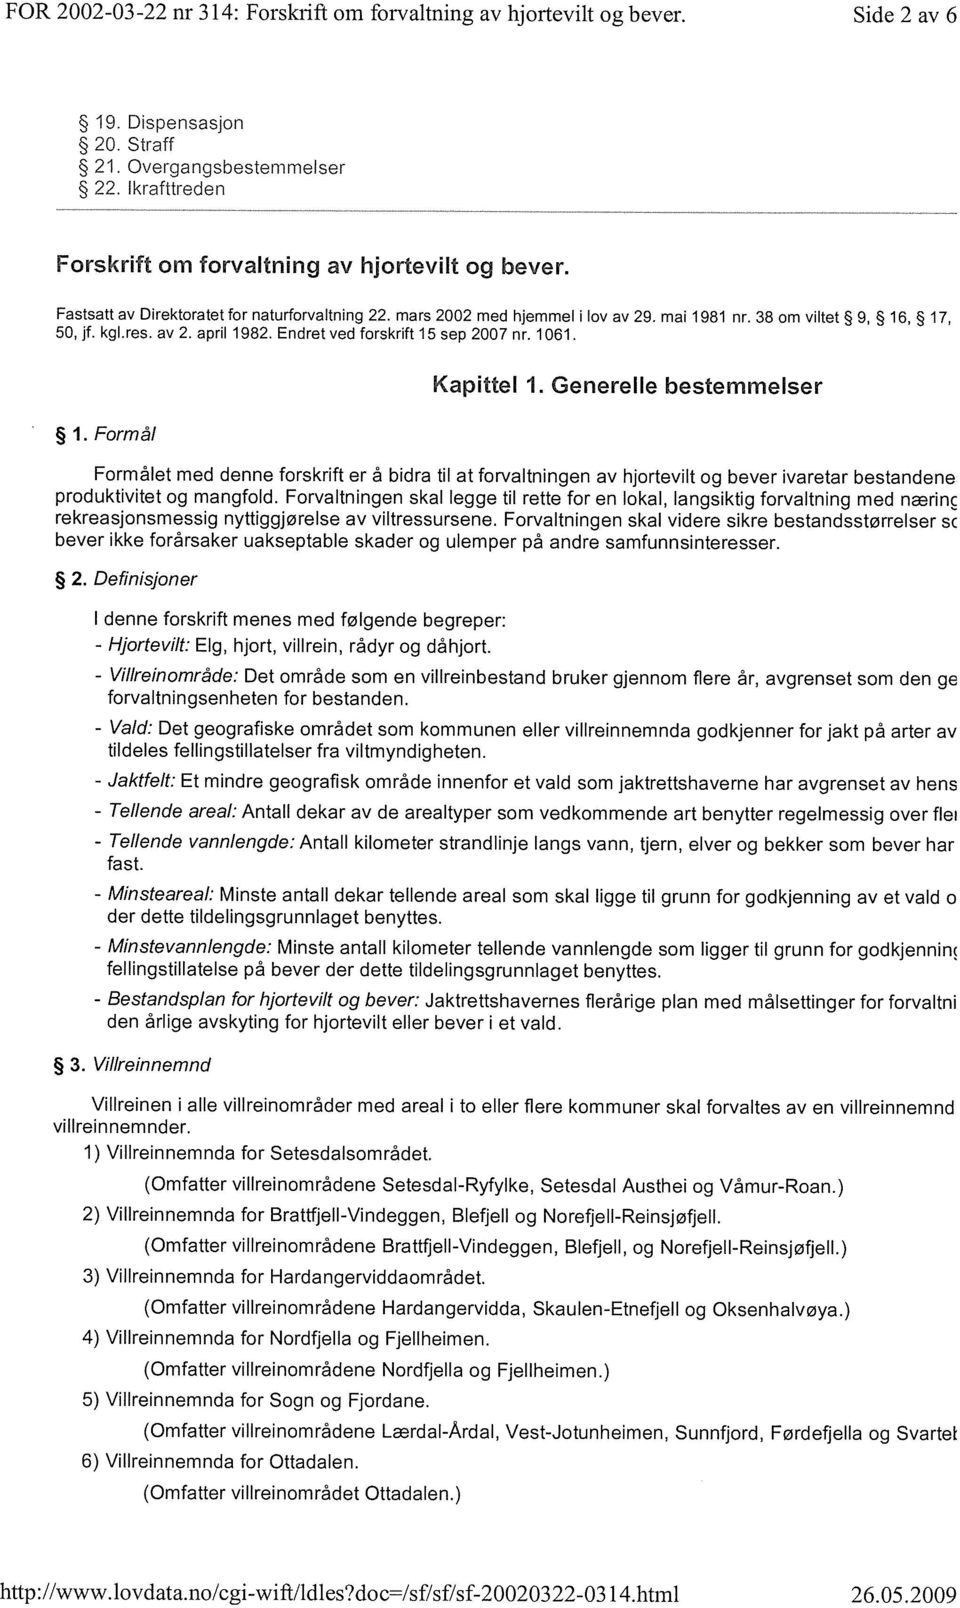 av 2. april 1982. Endret ved forskrift 15 sep 2007 nr. 1061. 1.Formål Kapittel 1.